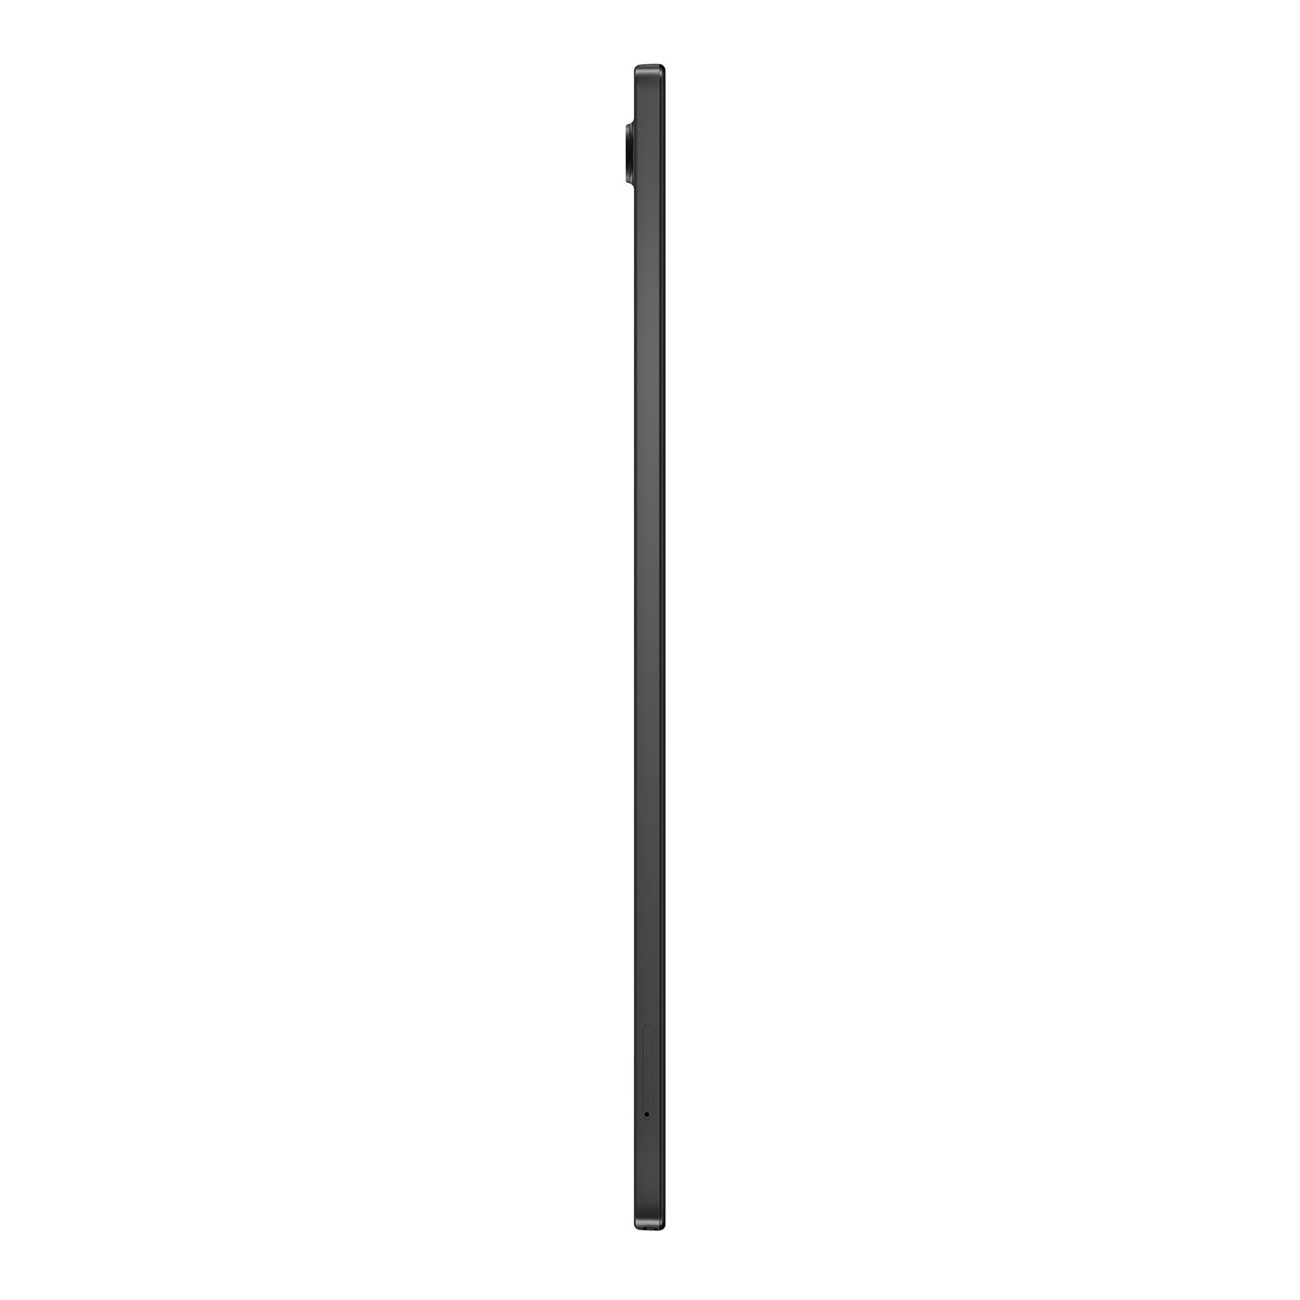 SAMSUNG Galaxy GB, Tab Zoll, grau 10,5 32 A8, Tablet